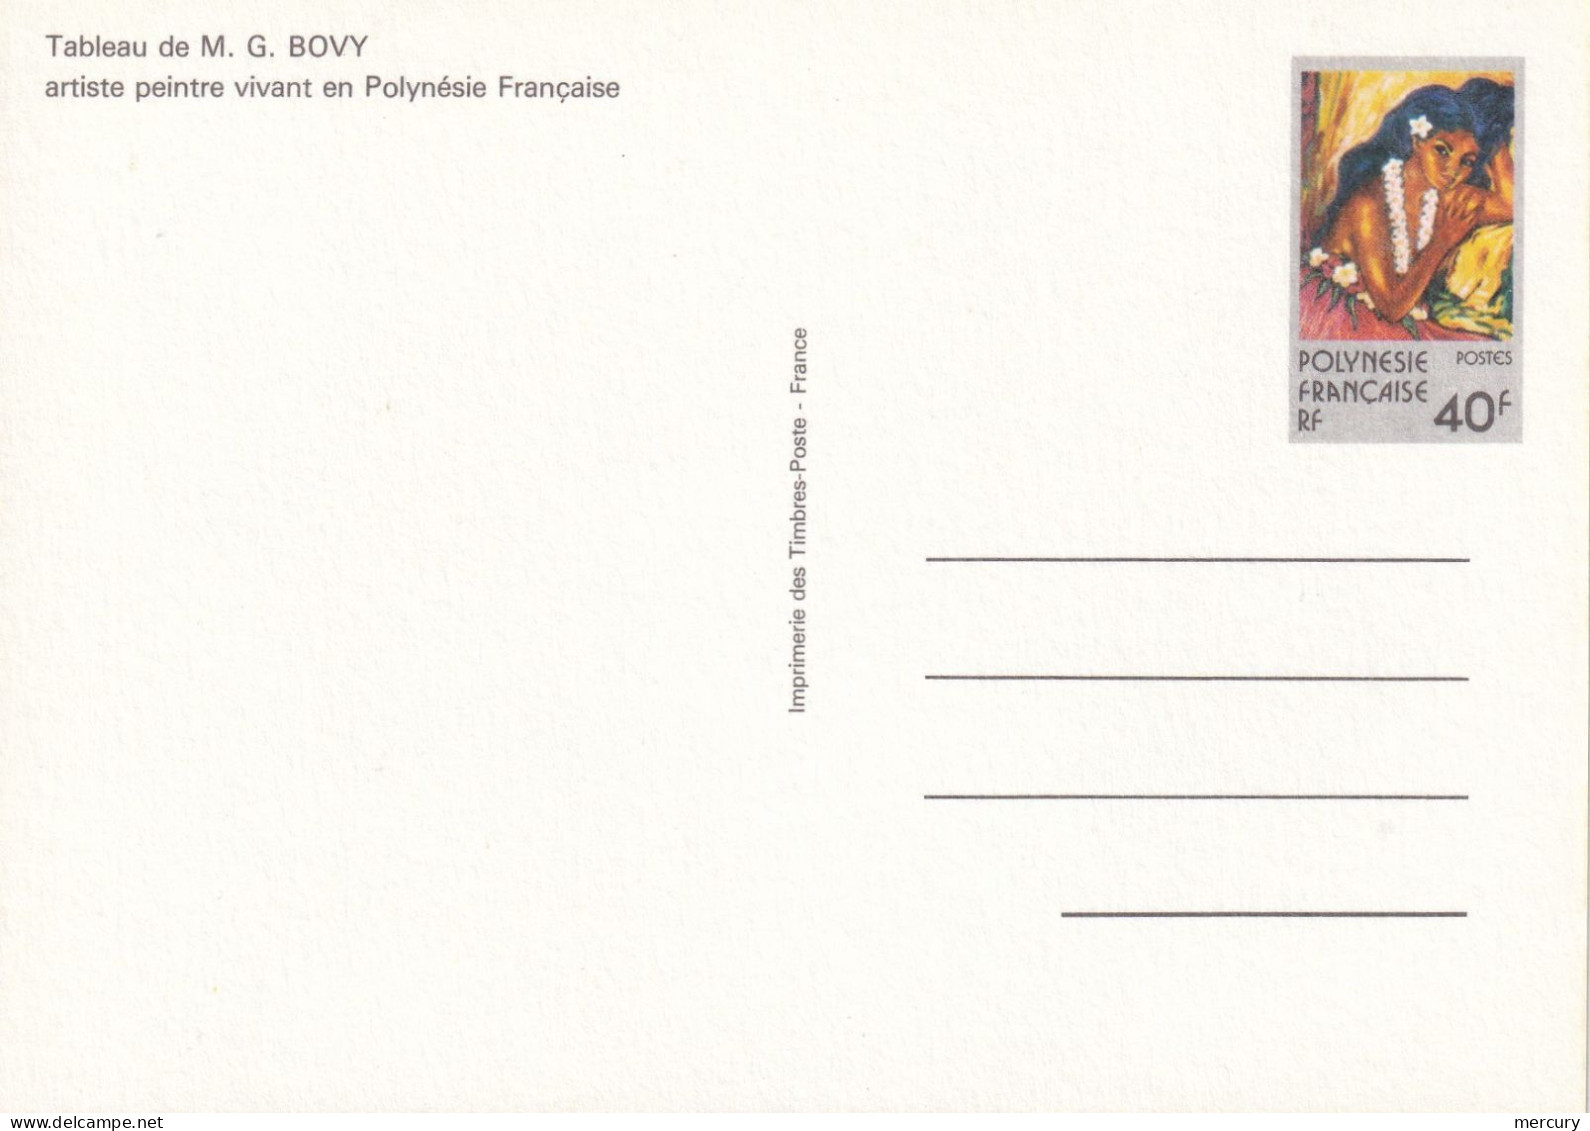 POLYNESIE - Tableau De Bovy - Postal Stationery